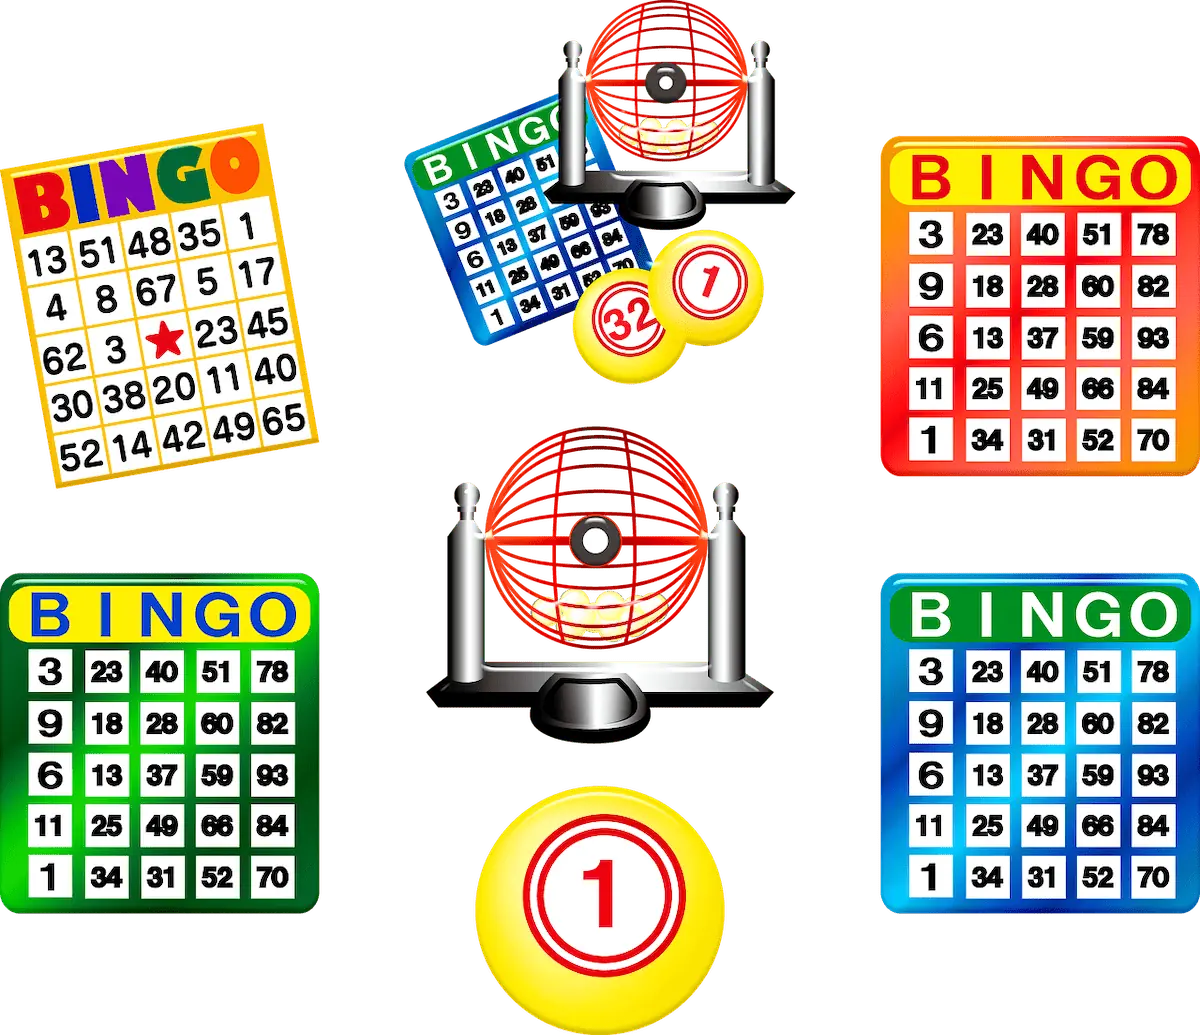 Make Bingo Even More Fun!